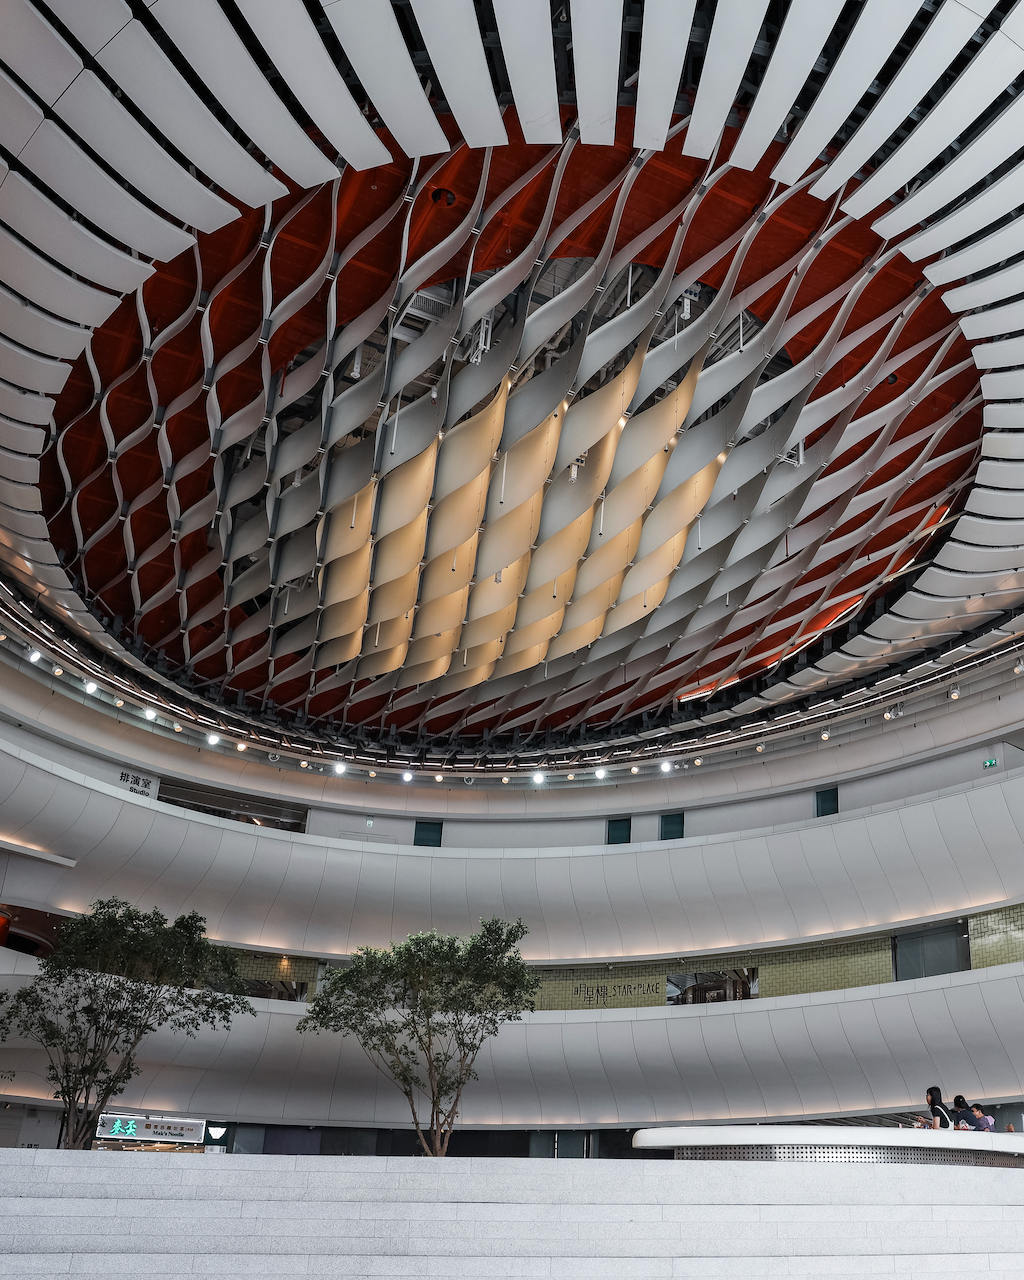 The ceiling of Xiqu - Hong Kong